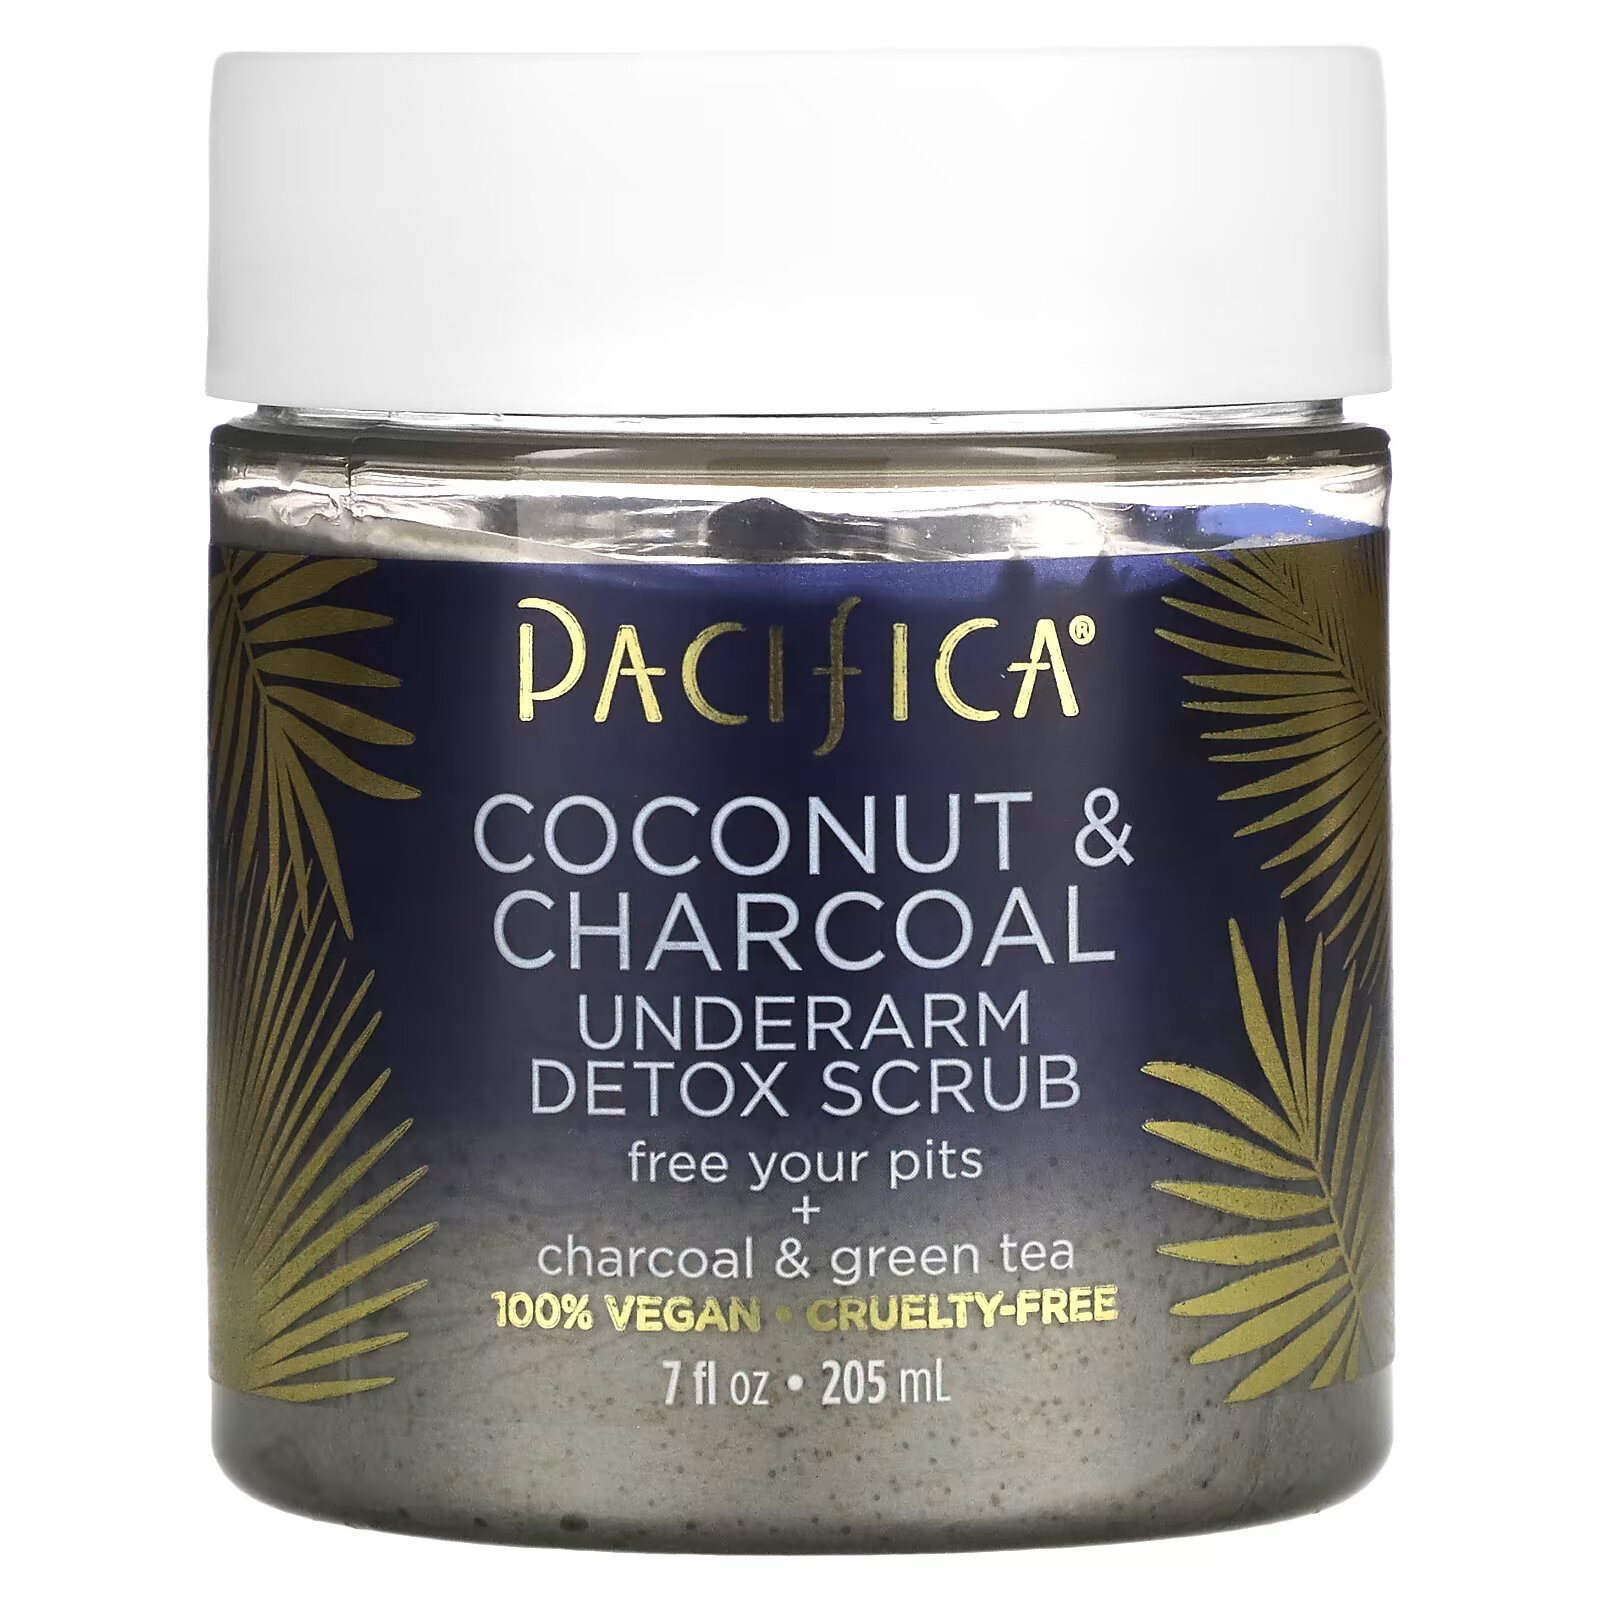 Детокс-скраб для подмышек Pacifica Coconut & Charcoal, 205 мл pacifica кокос и древесный уголь скраб для подмышек с эффектом детоксикации 205 мл 7 унций